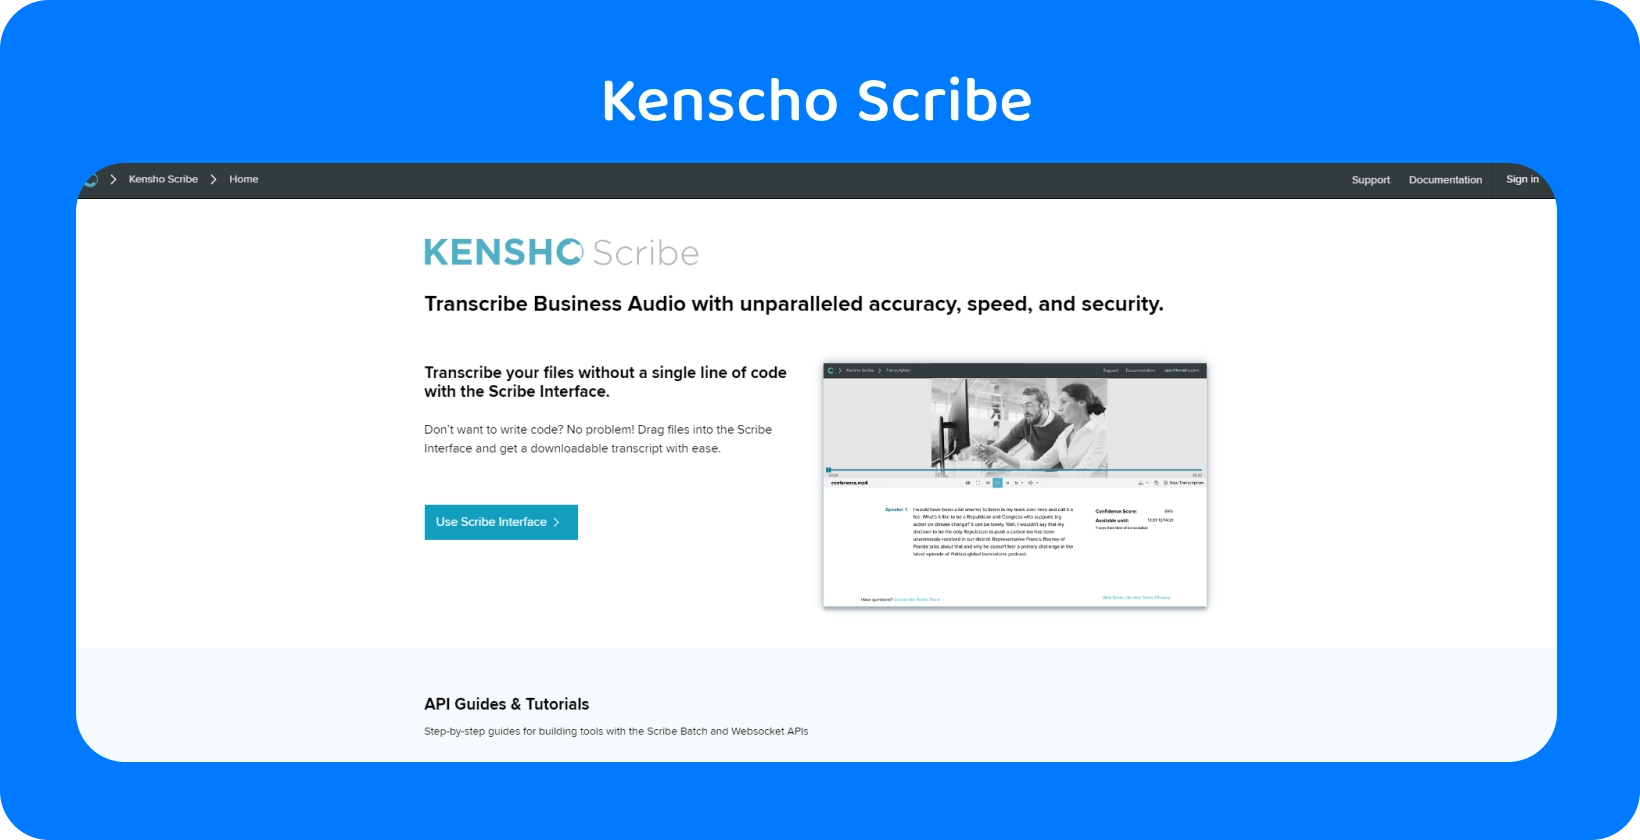 Strona internetowa Kensho z tekstem "SOLUTIONS", oferująca zaawansowane narzędzia AI, które uzupełniają dyktowanie Word.